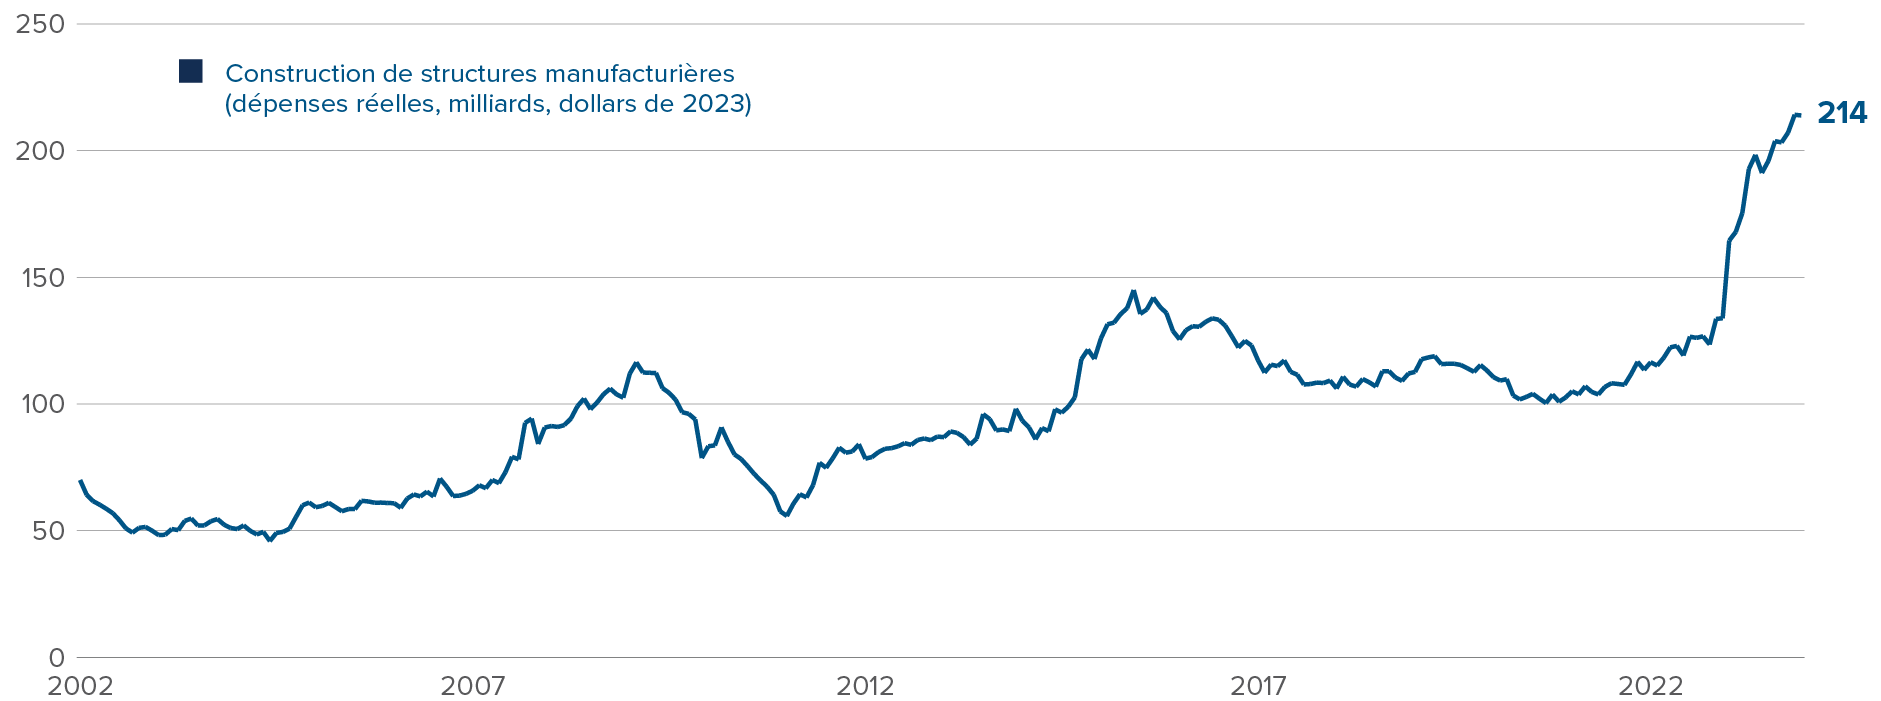 Graphique : Les dépenses de construction de structures manufacturières ont atteint 214 milliards de dollars en 2023, dépassant de loin chacune des 20 années précédentes.